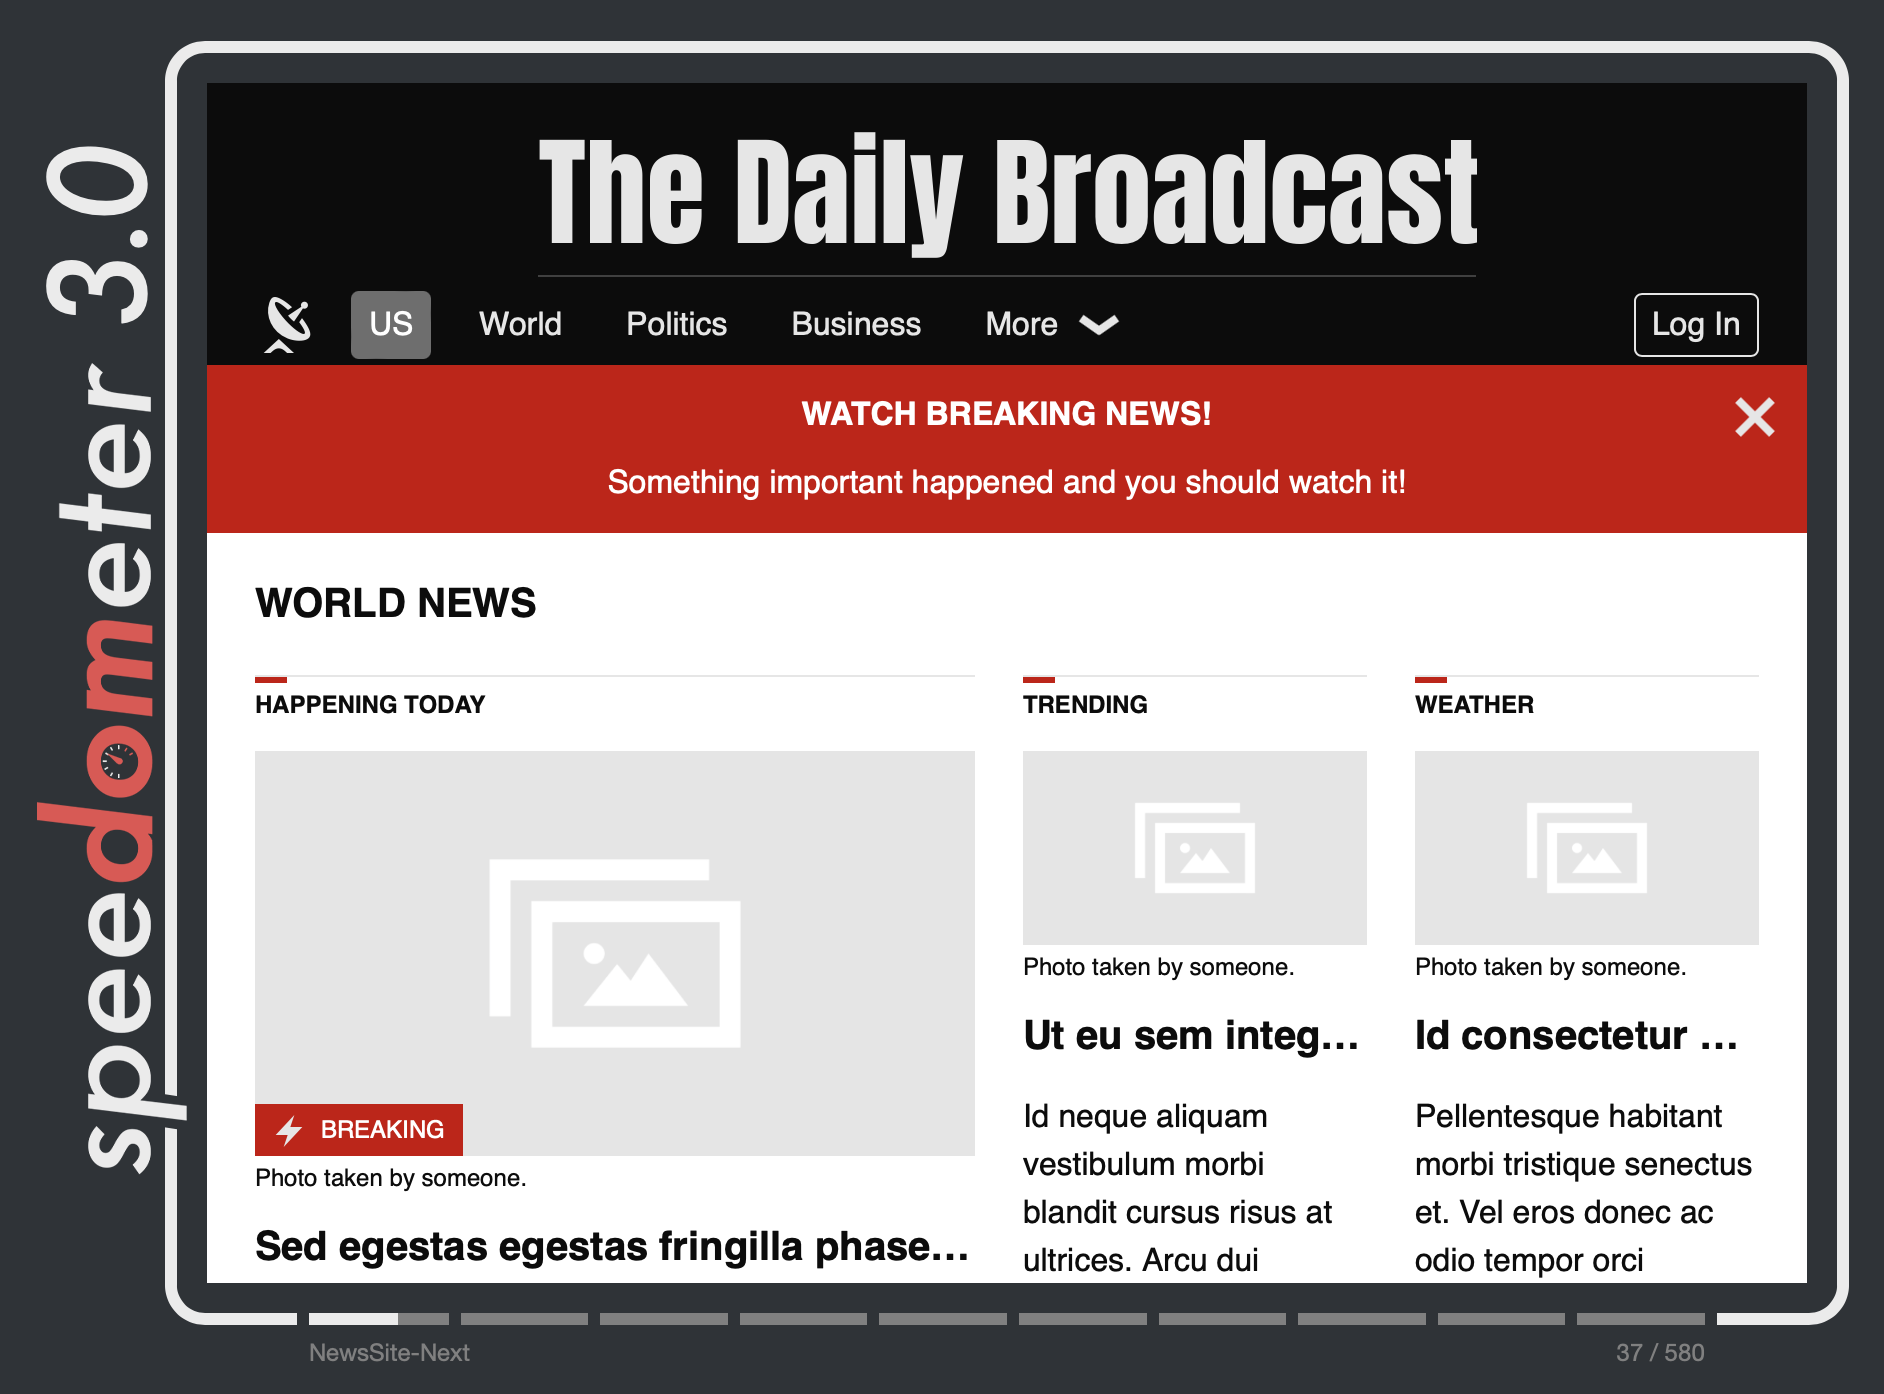 新闻站点工作负载模仿一个流行的新闻站点，具有导航菜单、主图像、标题和文章摘要。